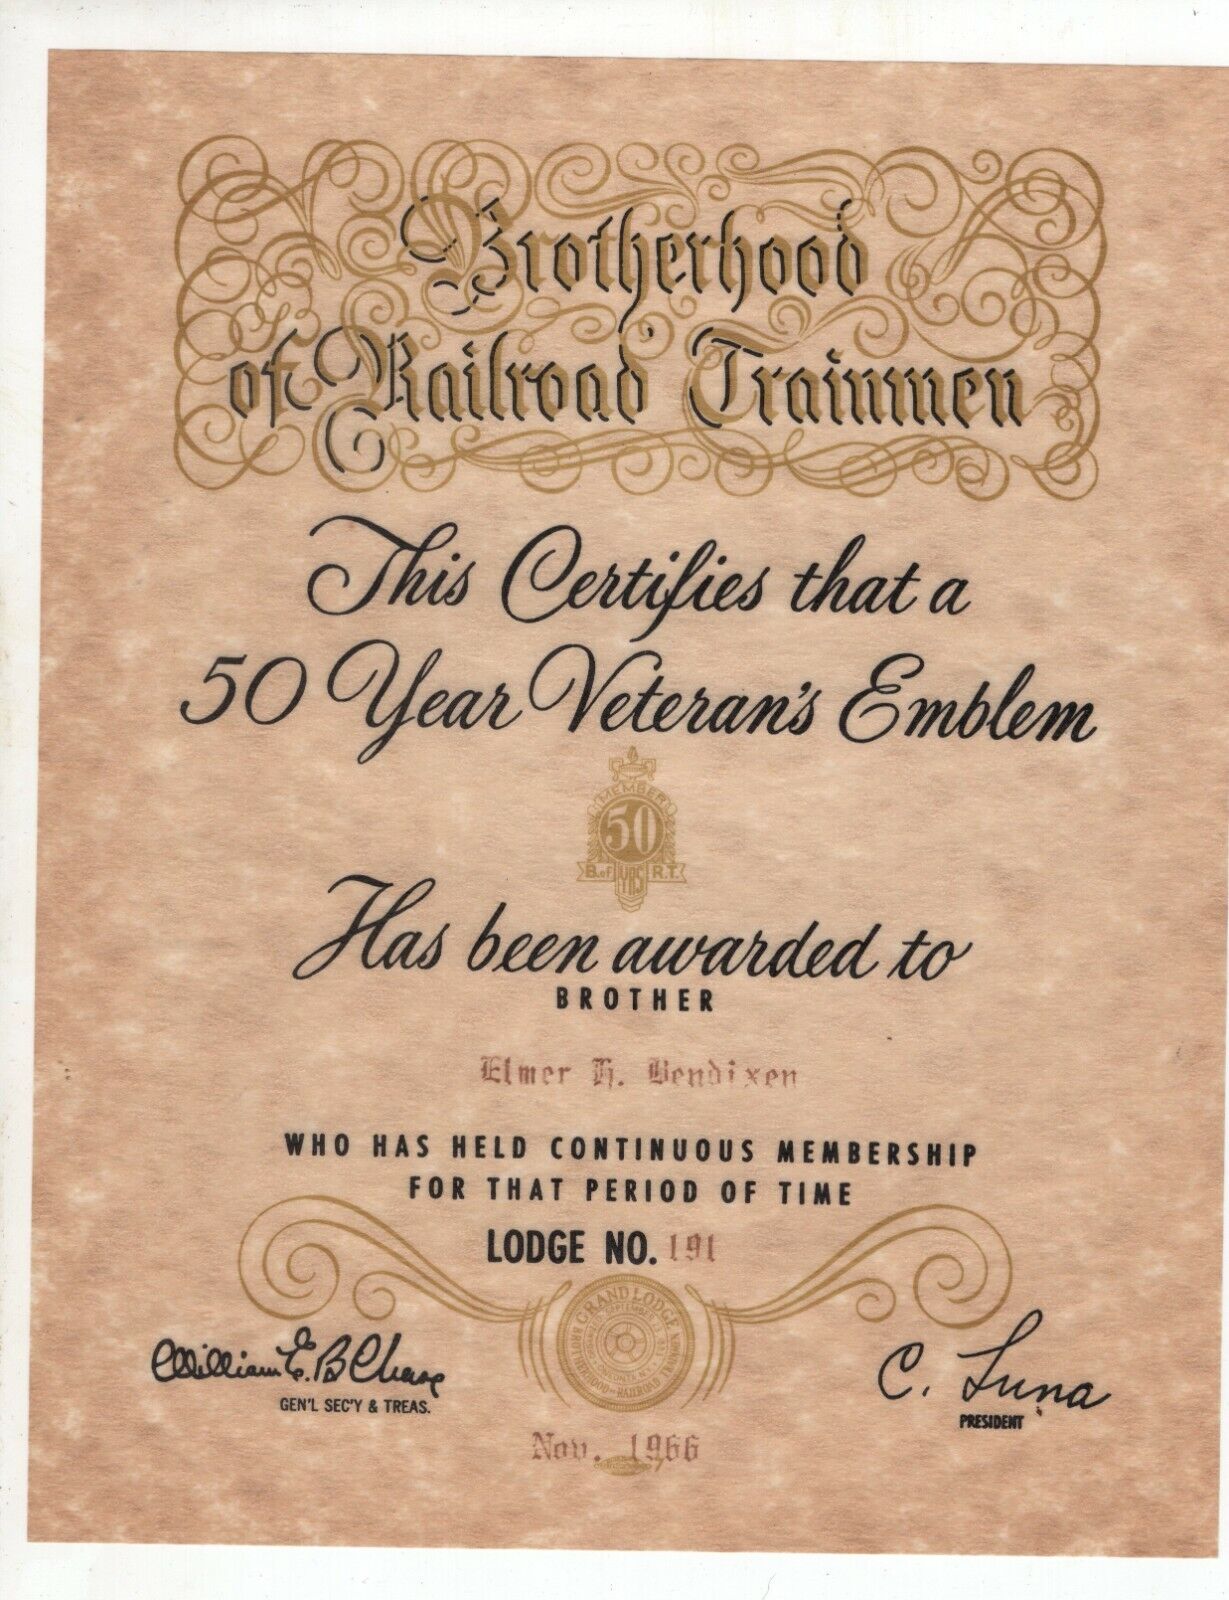 1966 Brotherhood of Railroad Trainmen Certificate for 50 Year Veteran's Emblem 